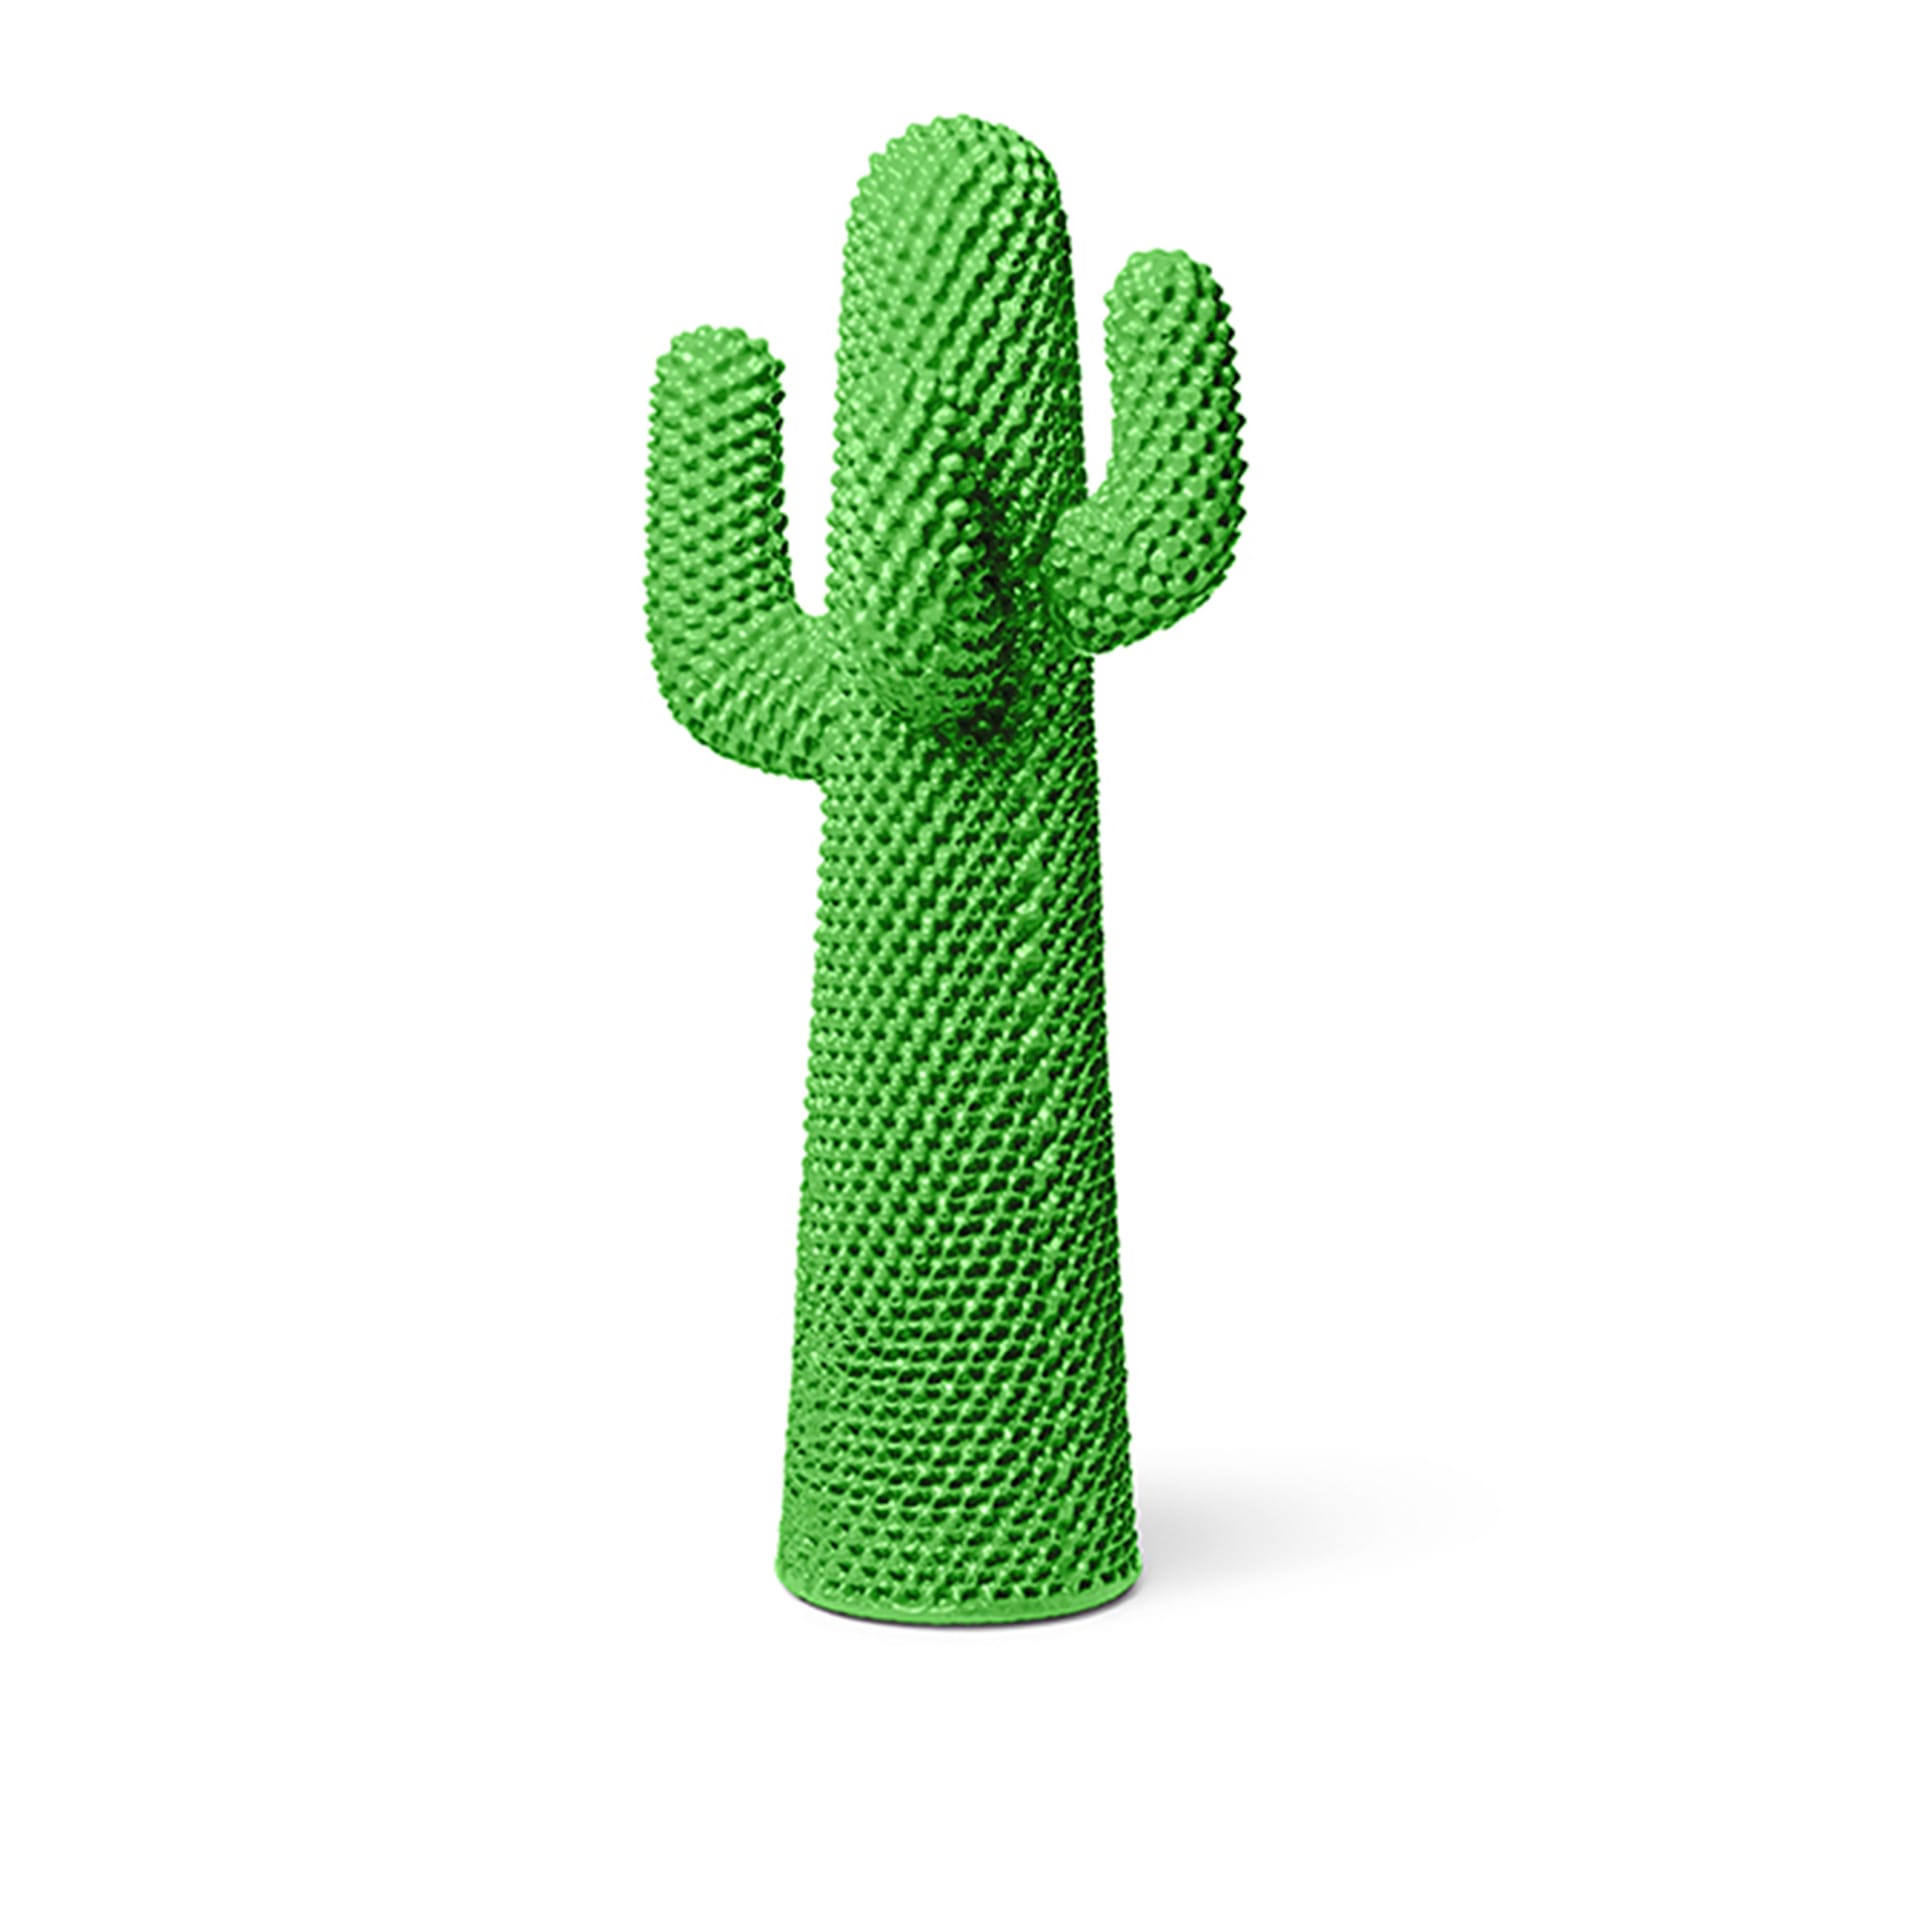 Another Green Cactus - Gufram - NO GA